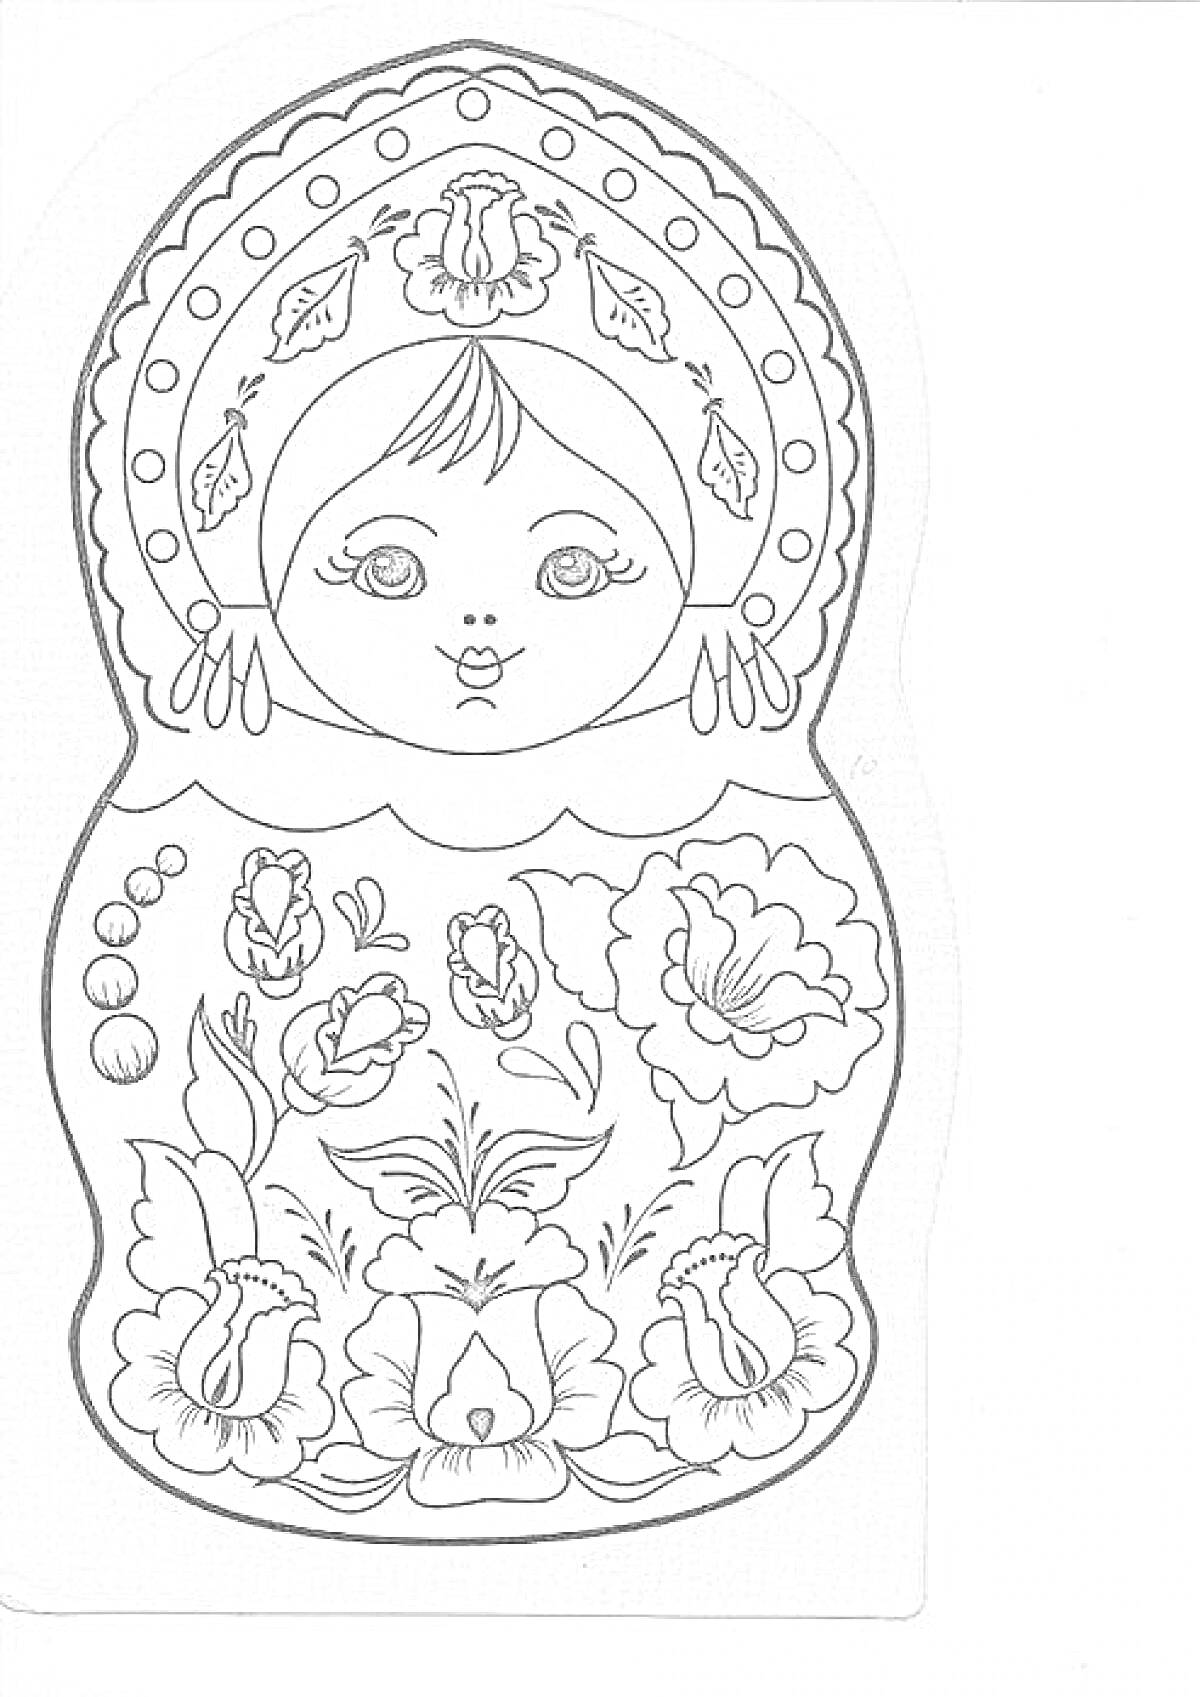 Раскраска Матрешка с цветочным узором и головным убором, центральный цветок на головном уборе, цветы внизу, украшения